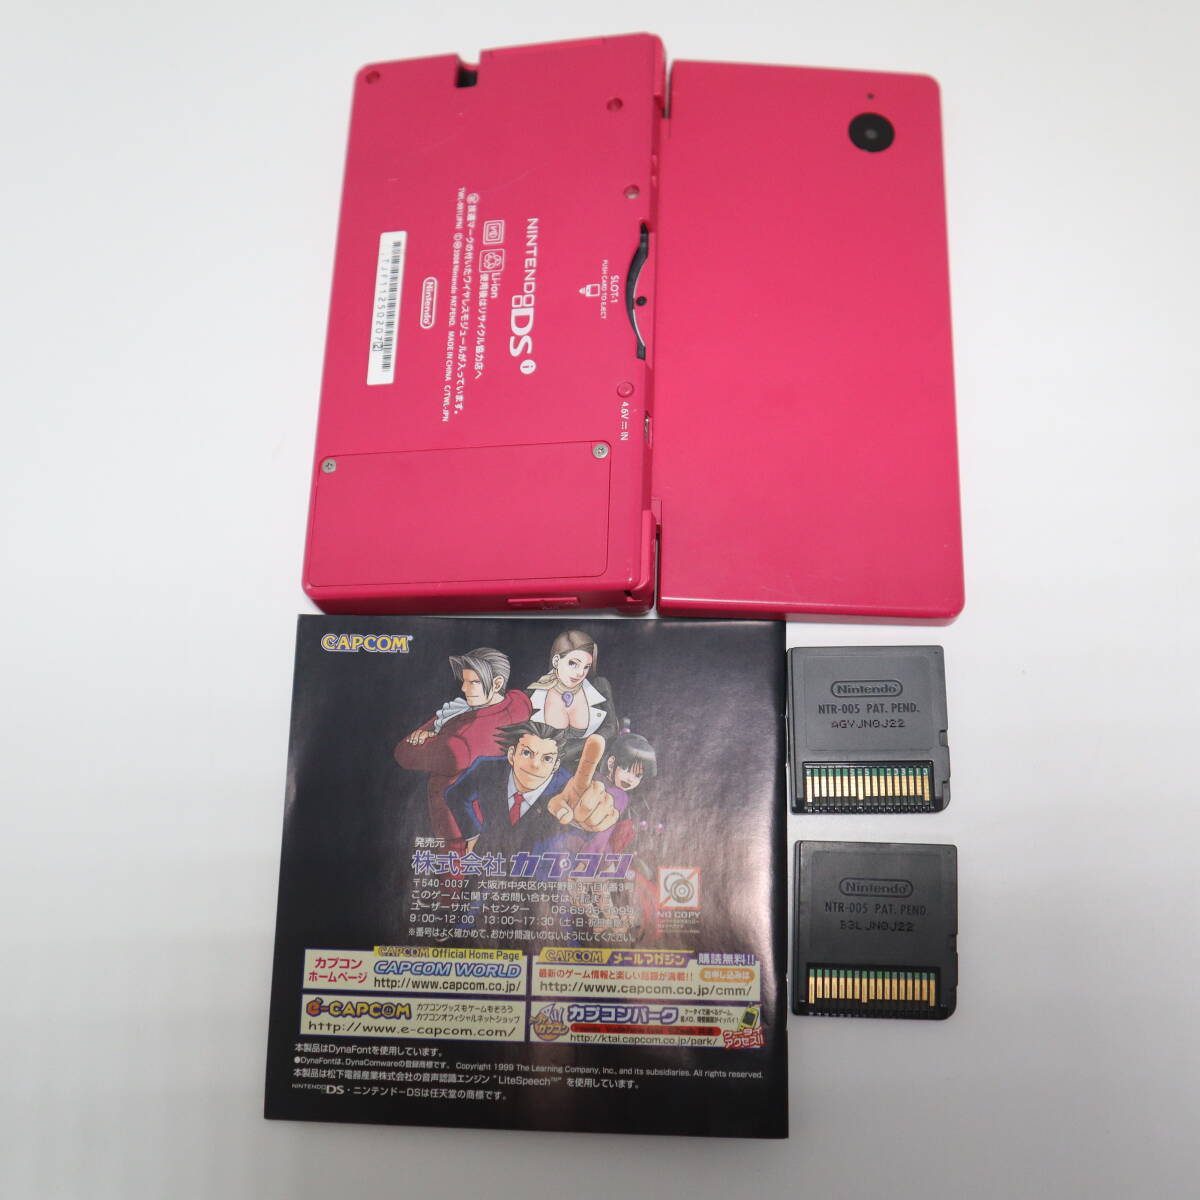 ニンテンドー DSi 本体 TWL-001 ピンク ペンなし・ゲーム 逆転裁判 蘇る逆転・えいごで旅する リトルチェロはケースなし 動作確認済の画像6